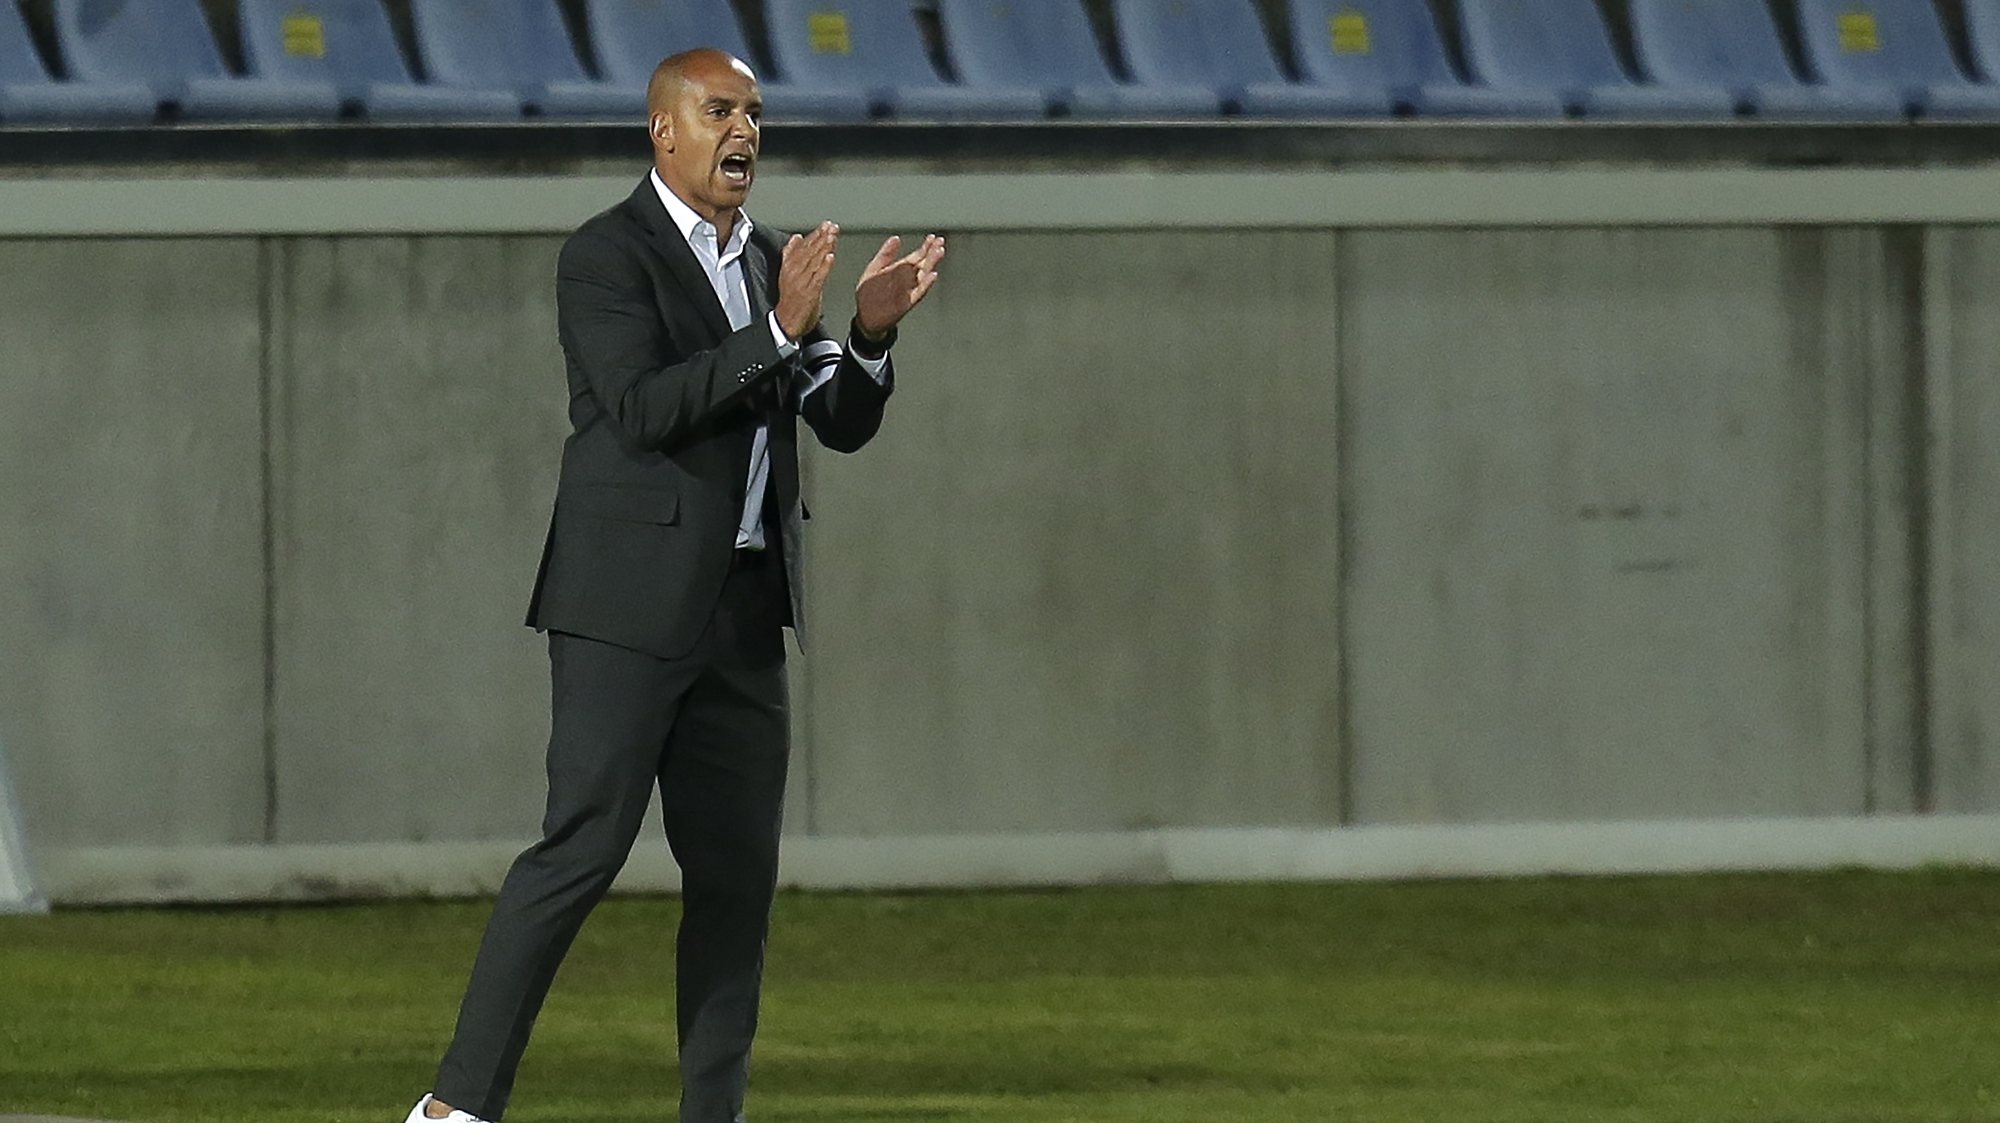 O treinador do Vitória de Guimarães, Pepa, reage durante o jogo da 6ª jornada da Primeira Liga de futebol contra o Arouca disputado no Estádio Municipal de Arouca, 18 de setembro de 2021. MANUEL FERNANDO ARAUJO/LUSA